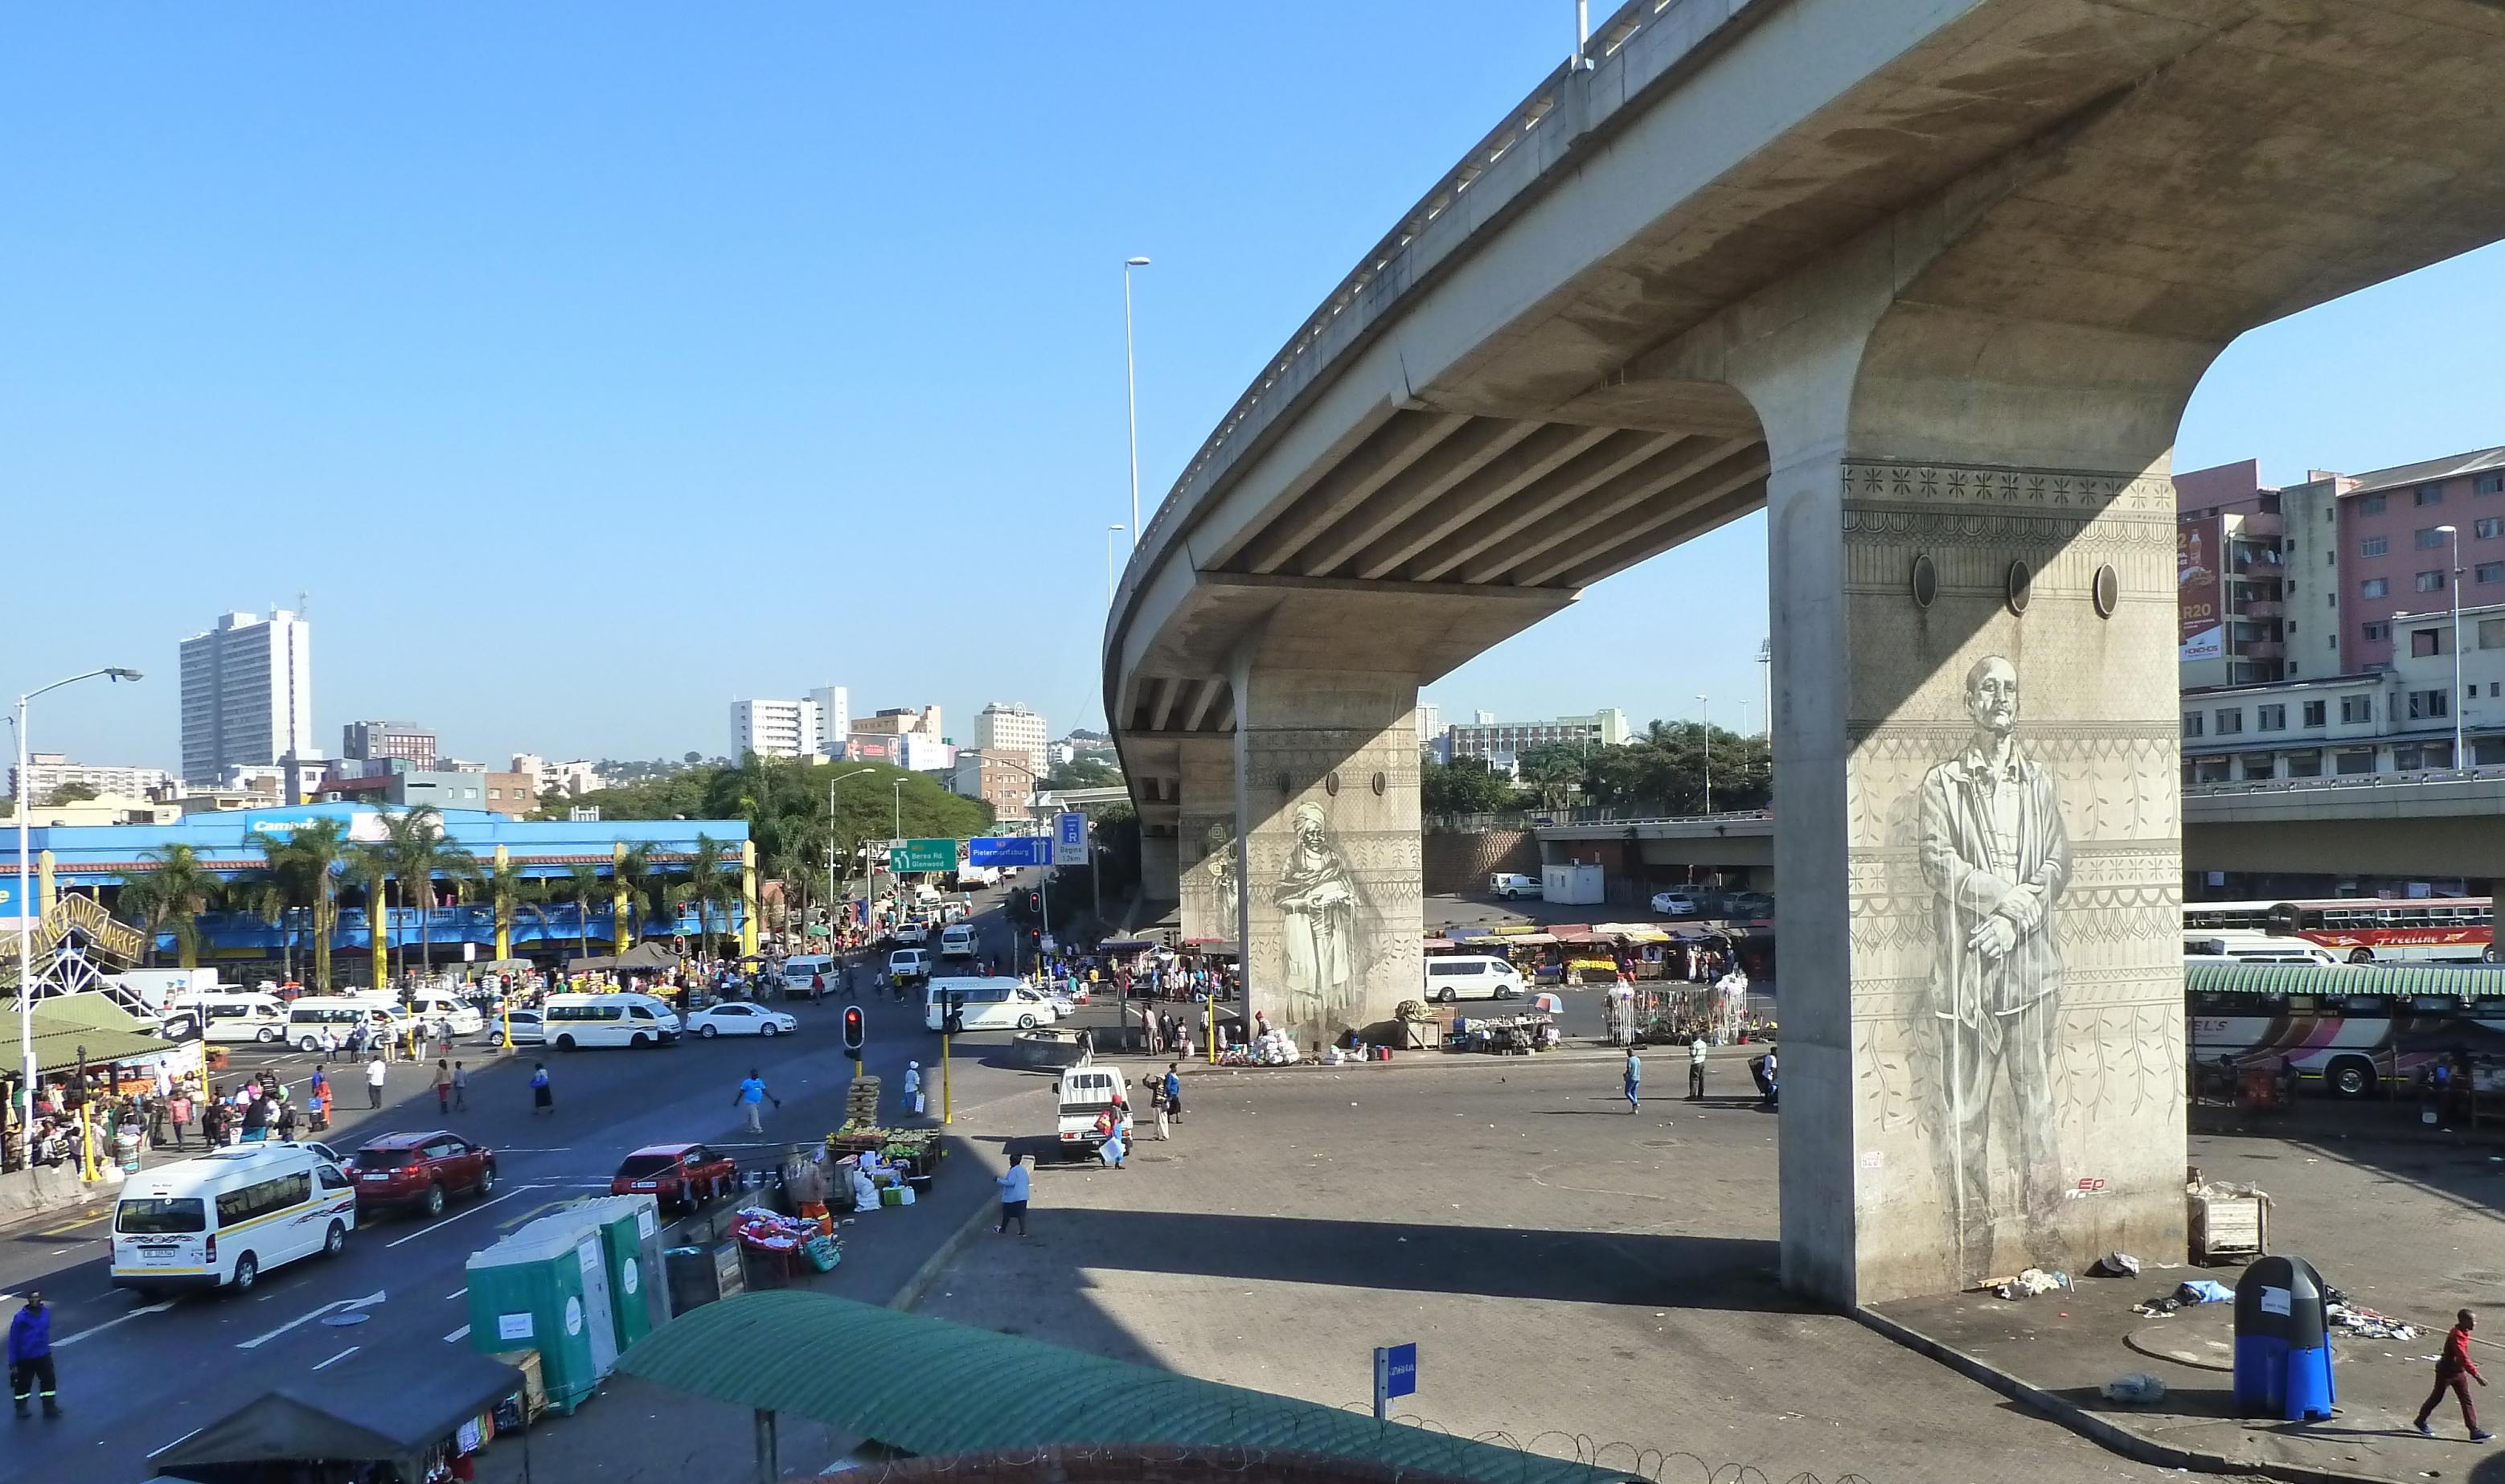 Eine Betonbrücke, auf deren Pfleiler große Porträts gemalt wurden, führt in die Innenstadt von Durban. Hochhäuser sind zu sehen, davor Straßenhändler und Minibus-Taxis.